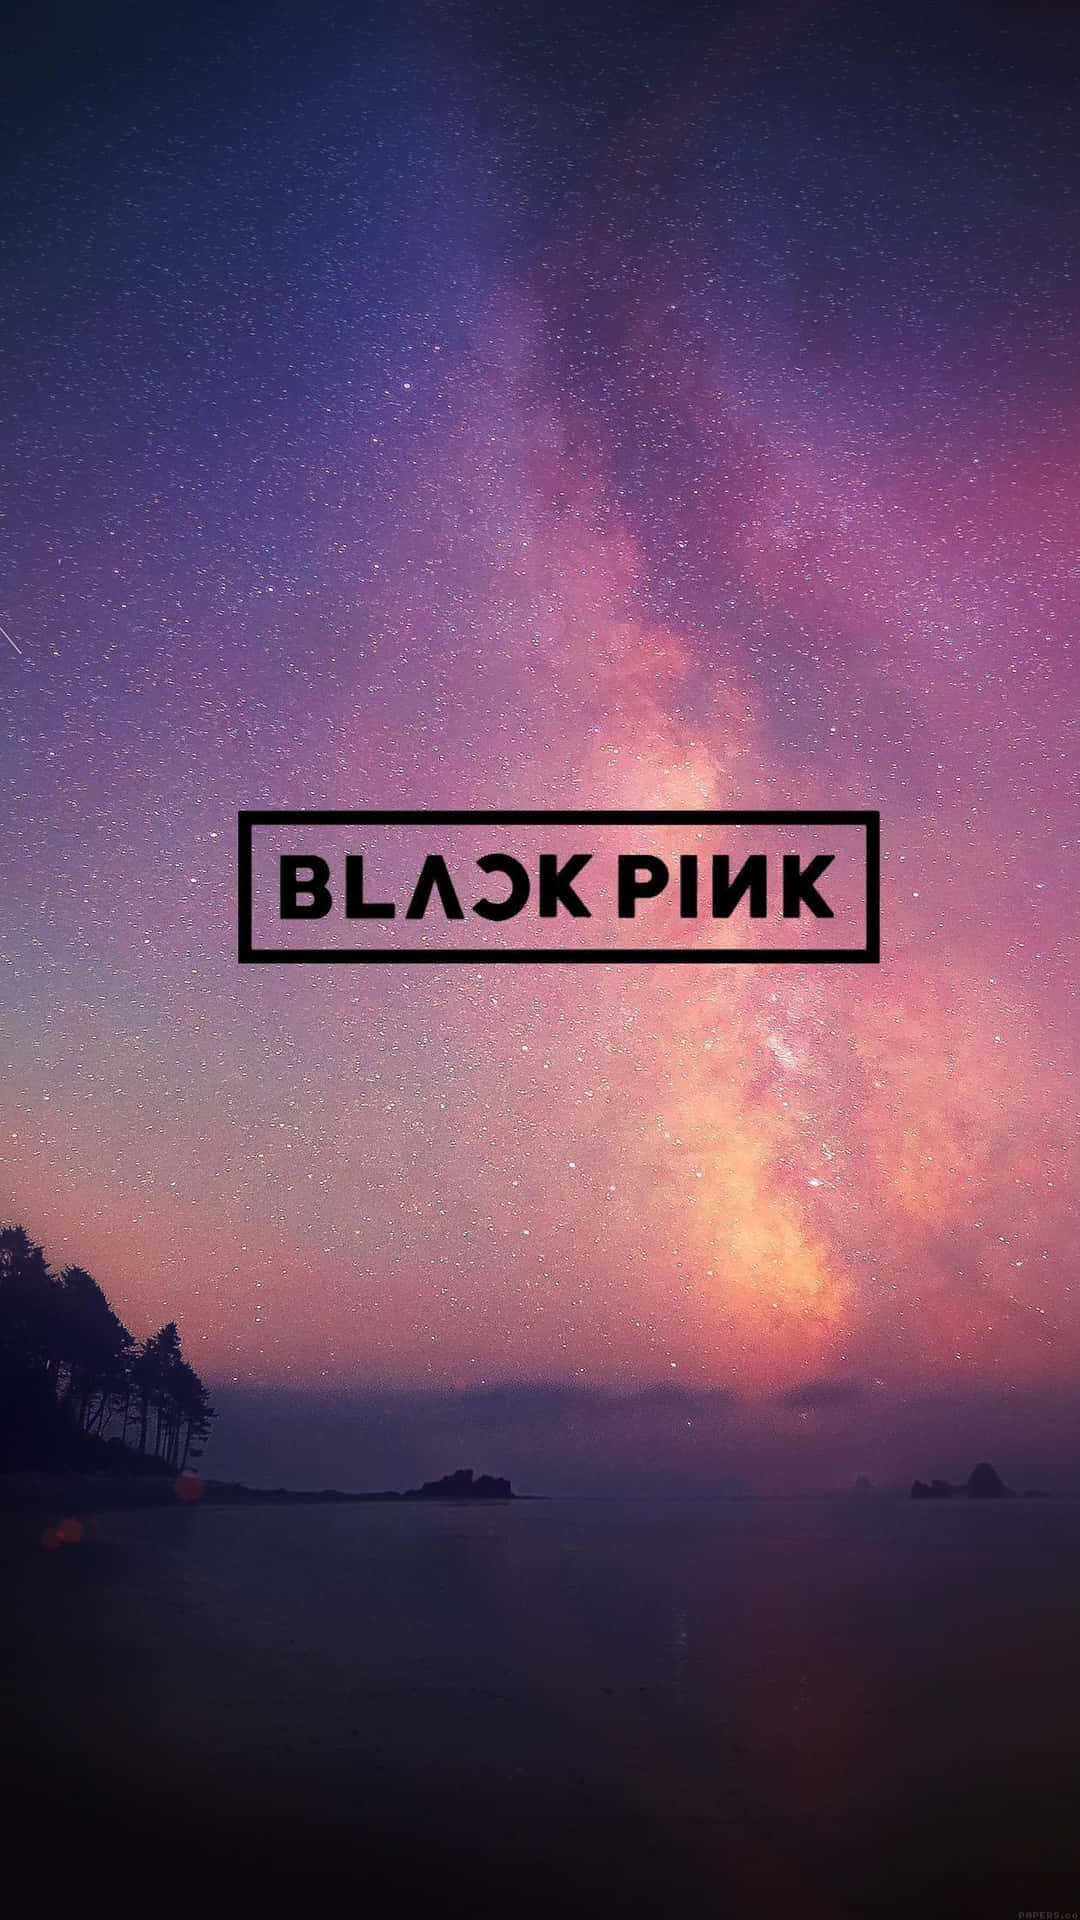 Laregalità Del K-pop Degli Blackpink Porta La Loro Incredibile Energia Nella Musica E Nella Moda.